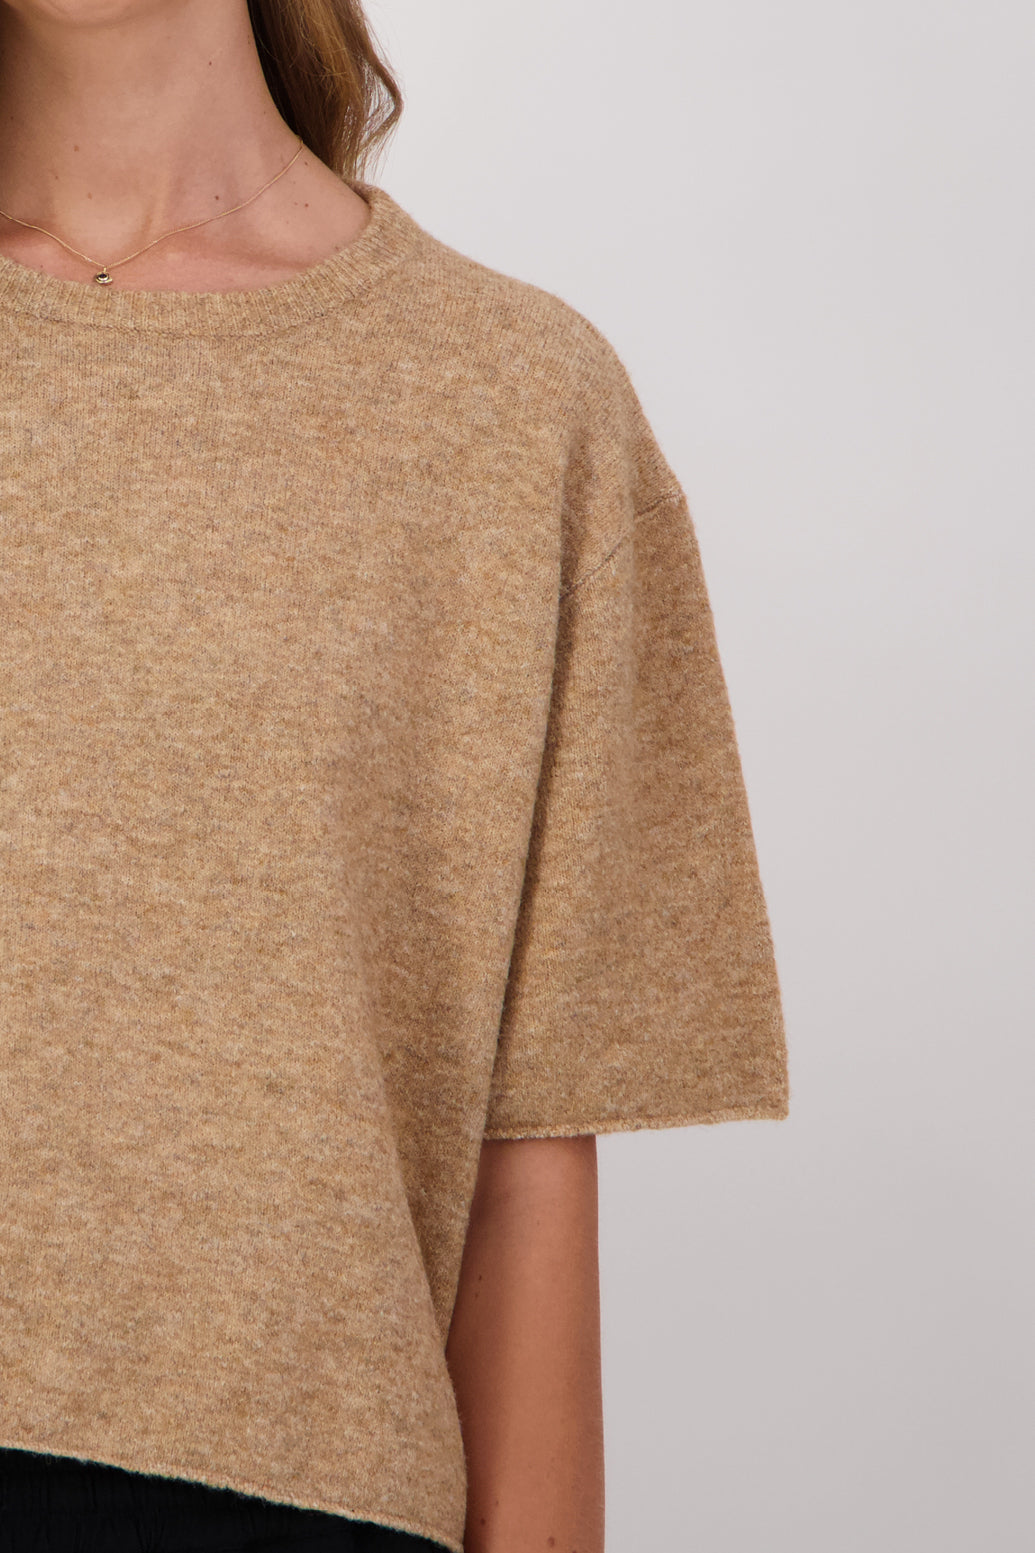 Dapper Wool Blend Short Sleeve Top/T-Shirt - Camel